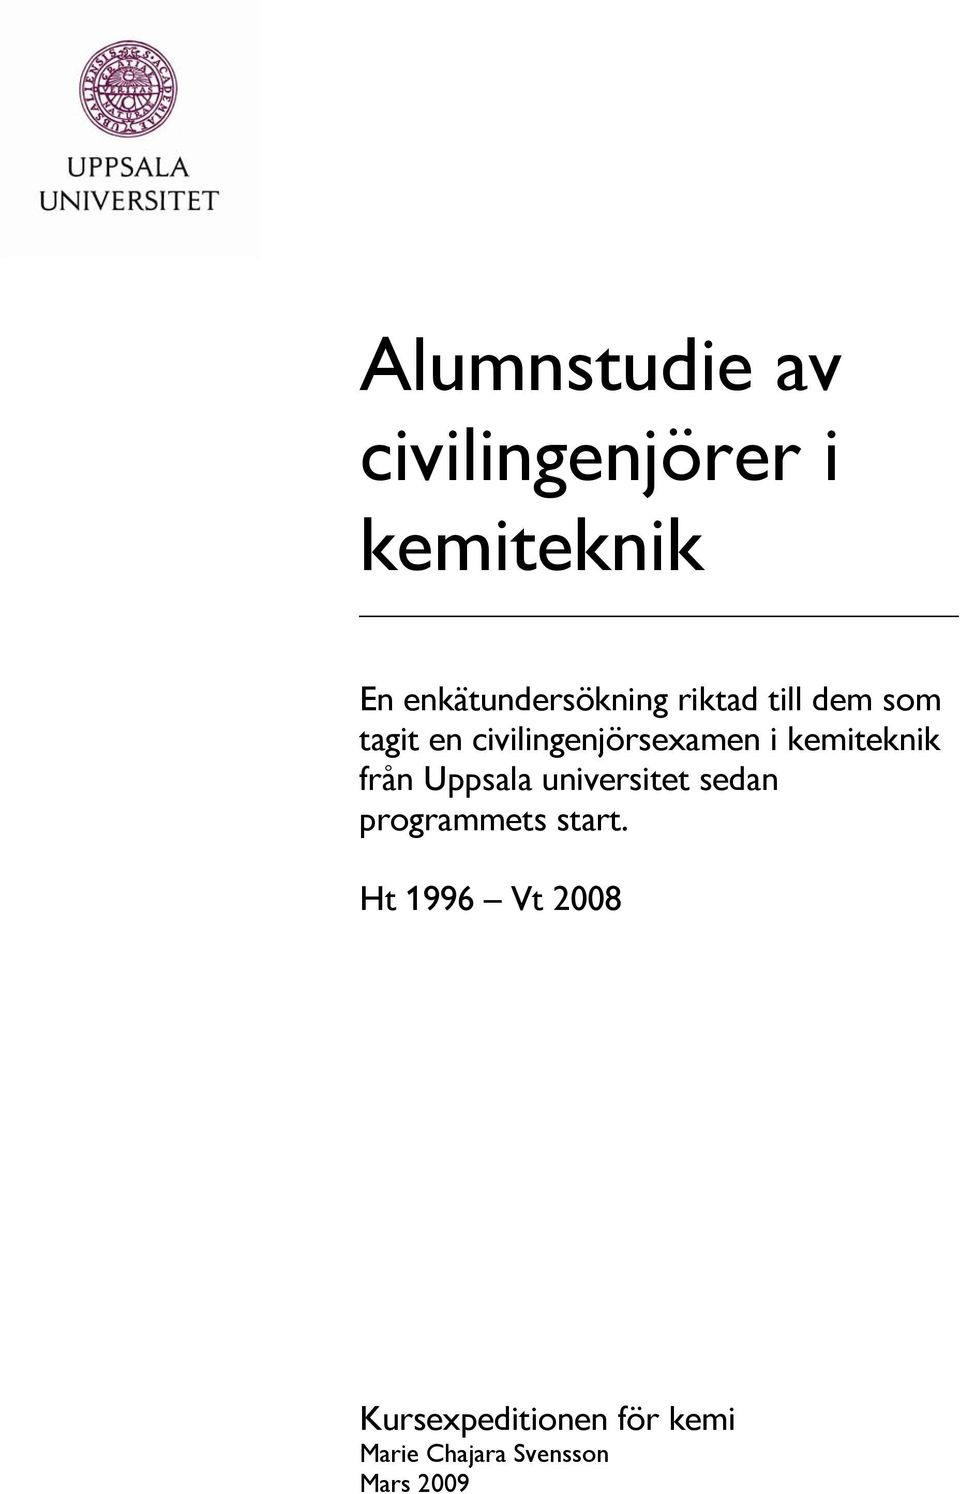 civilingenjörsexamen i kemiteknik från Uppsala universitet